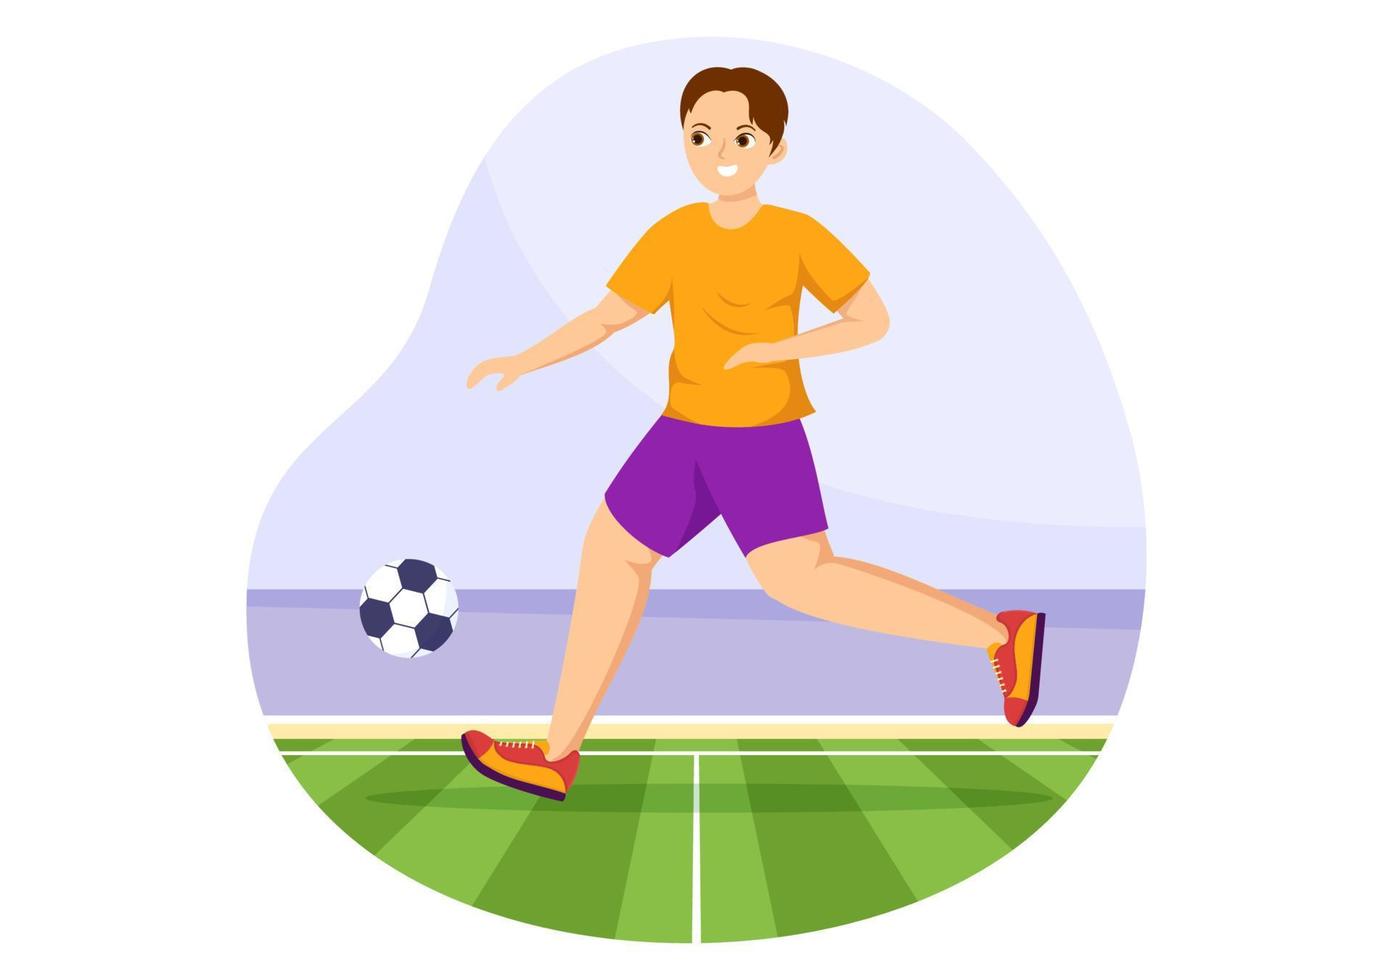 ilustração esportiva de futsal, futebol ou futebol com jogadores atirando em uma bola e driblando em um campeonato de esportes planos modelos desenhados à mão vetor